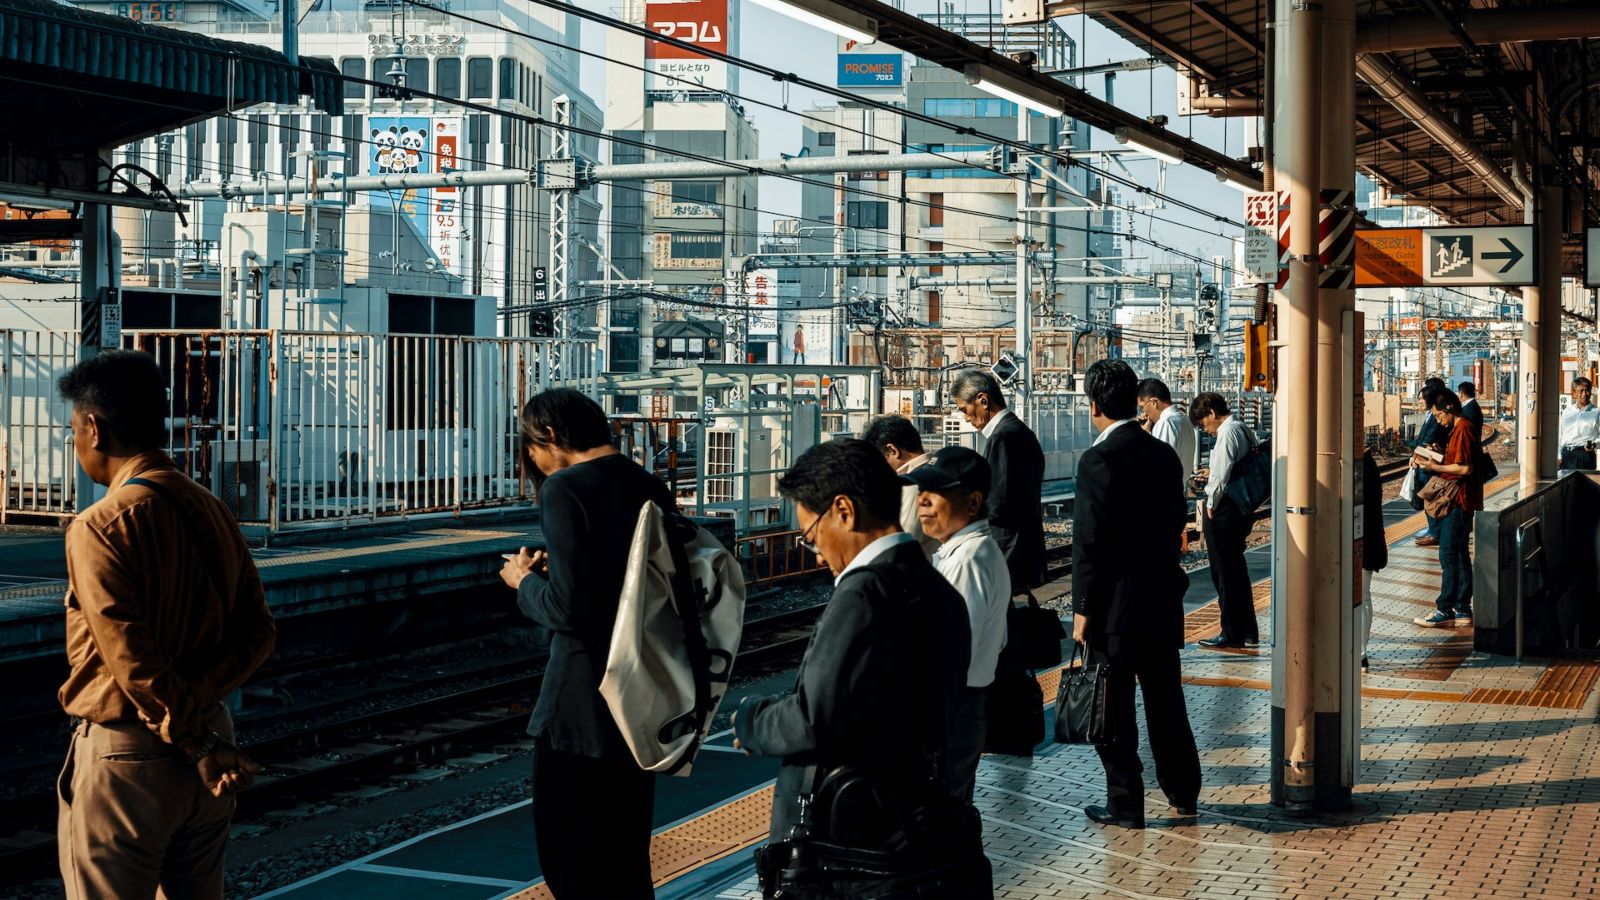 Japan train station - Point Hacks